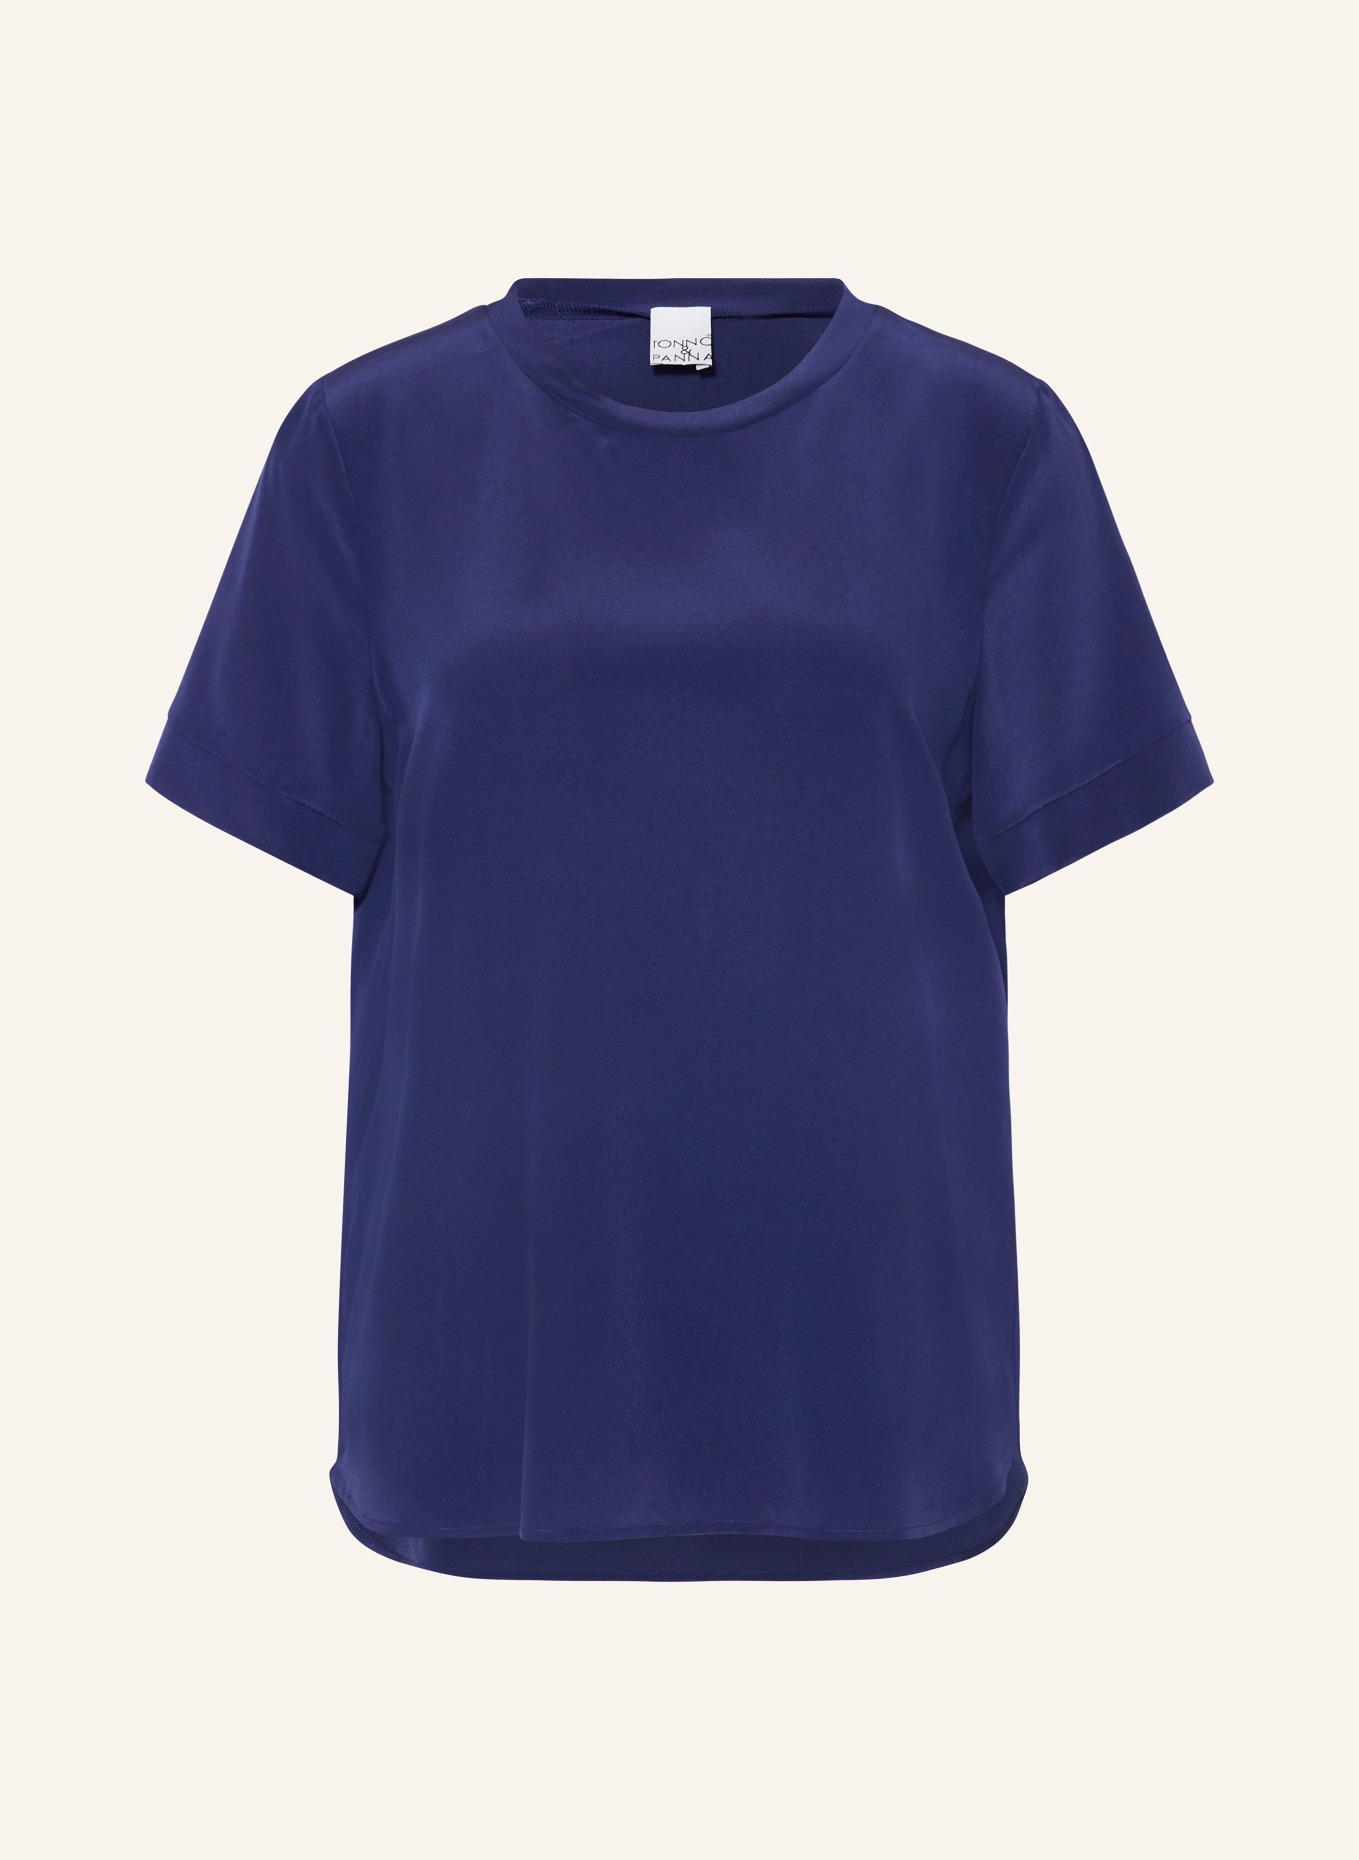 TONNO & PANNA T-Shirt STINETON aus Seide, Farbe: DUNKELBLAU (Bild 1)